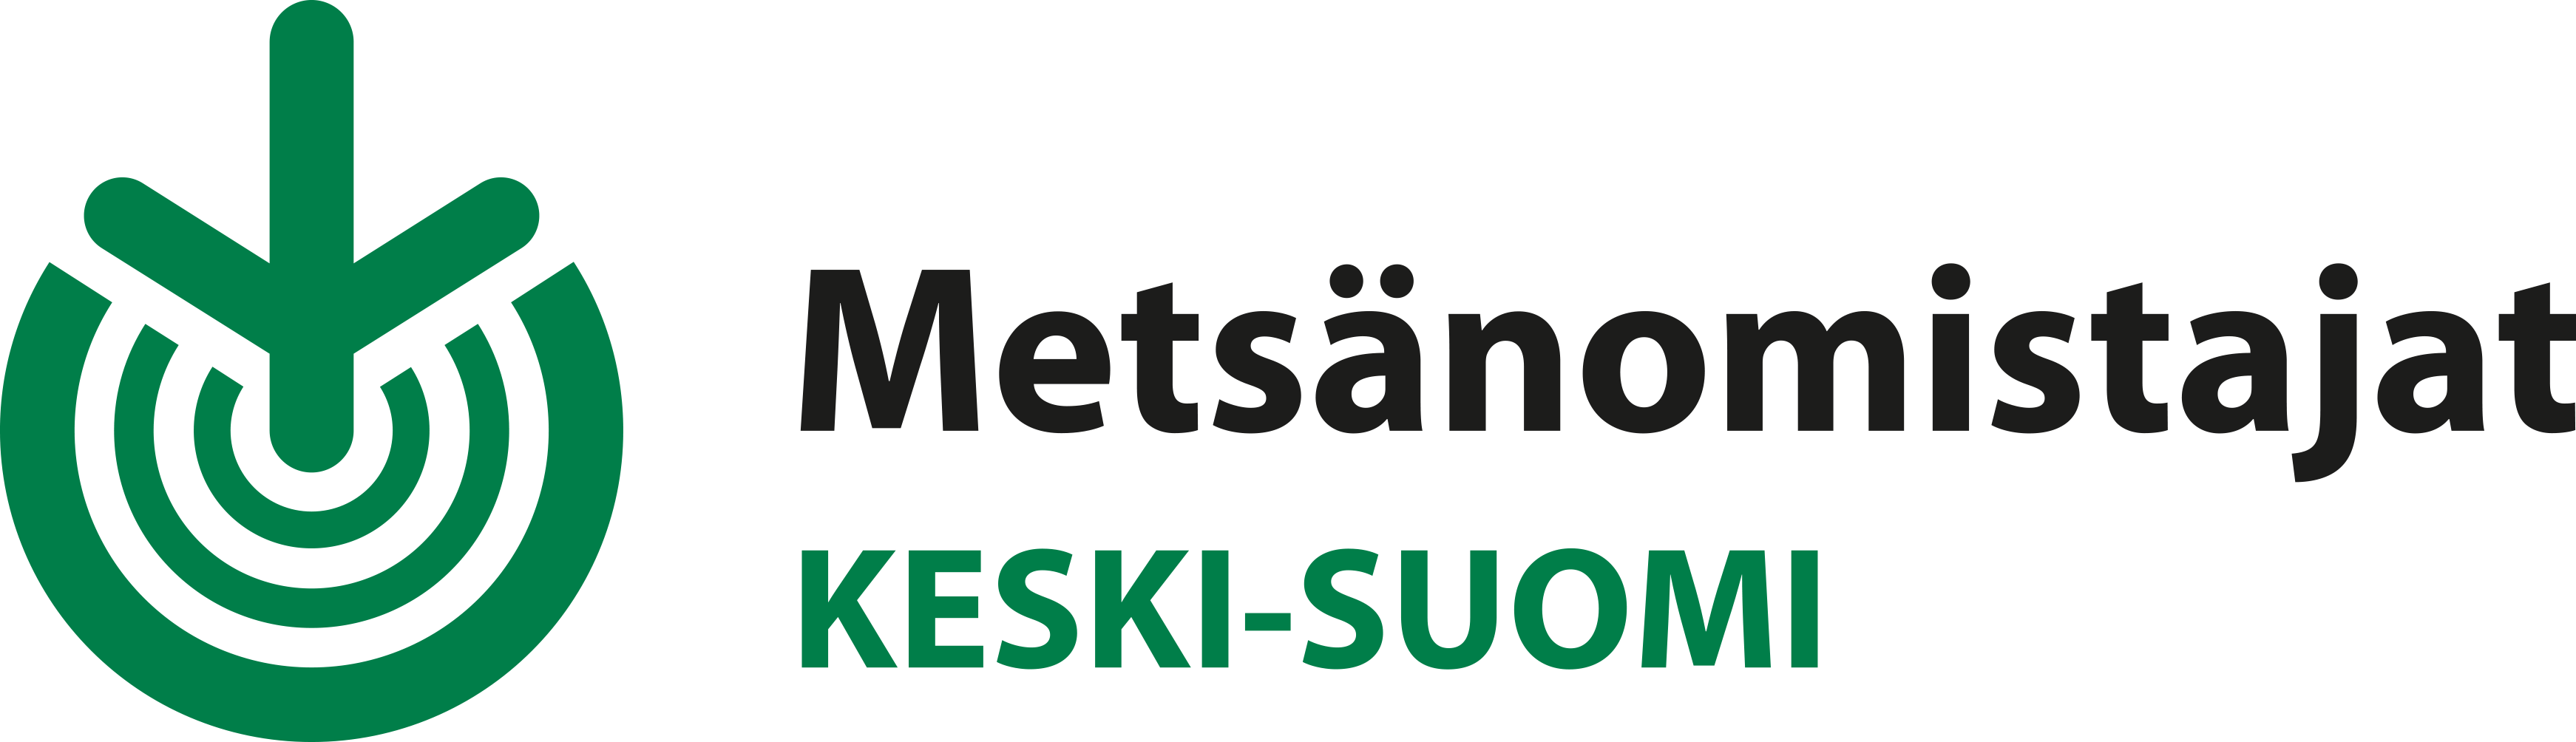 Omistusjärjestelyt – Metsänhoitoyhdistys Keski-Suomi